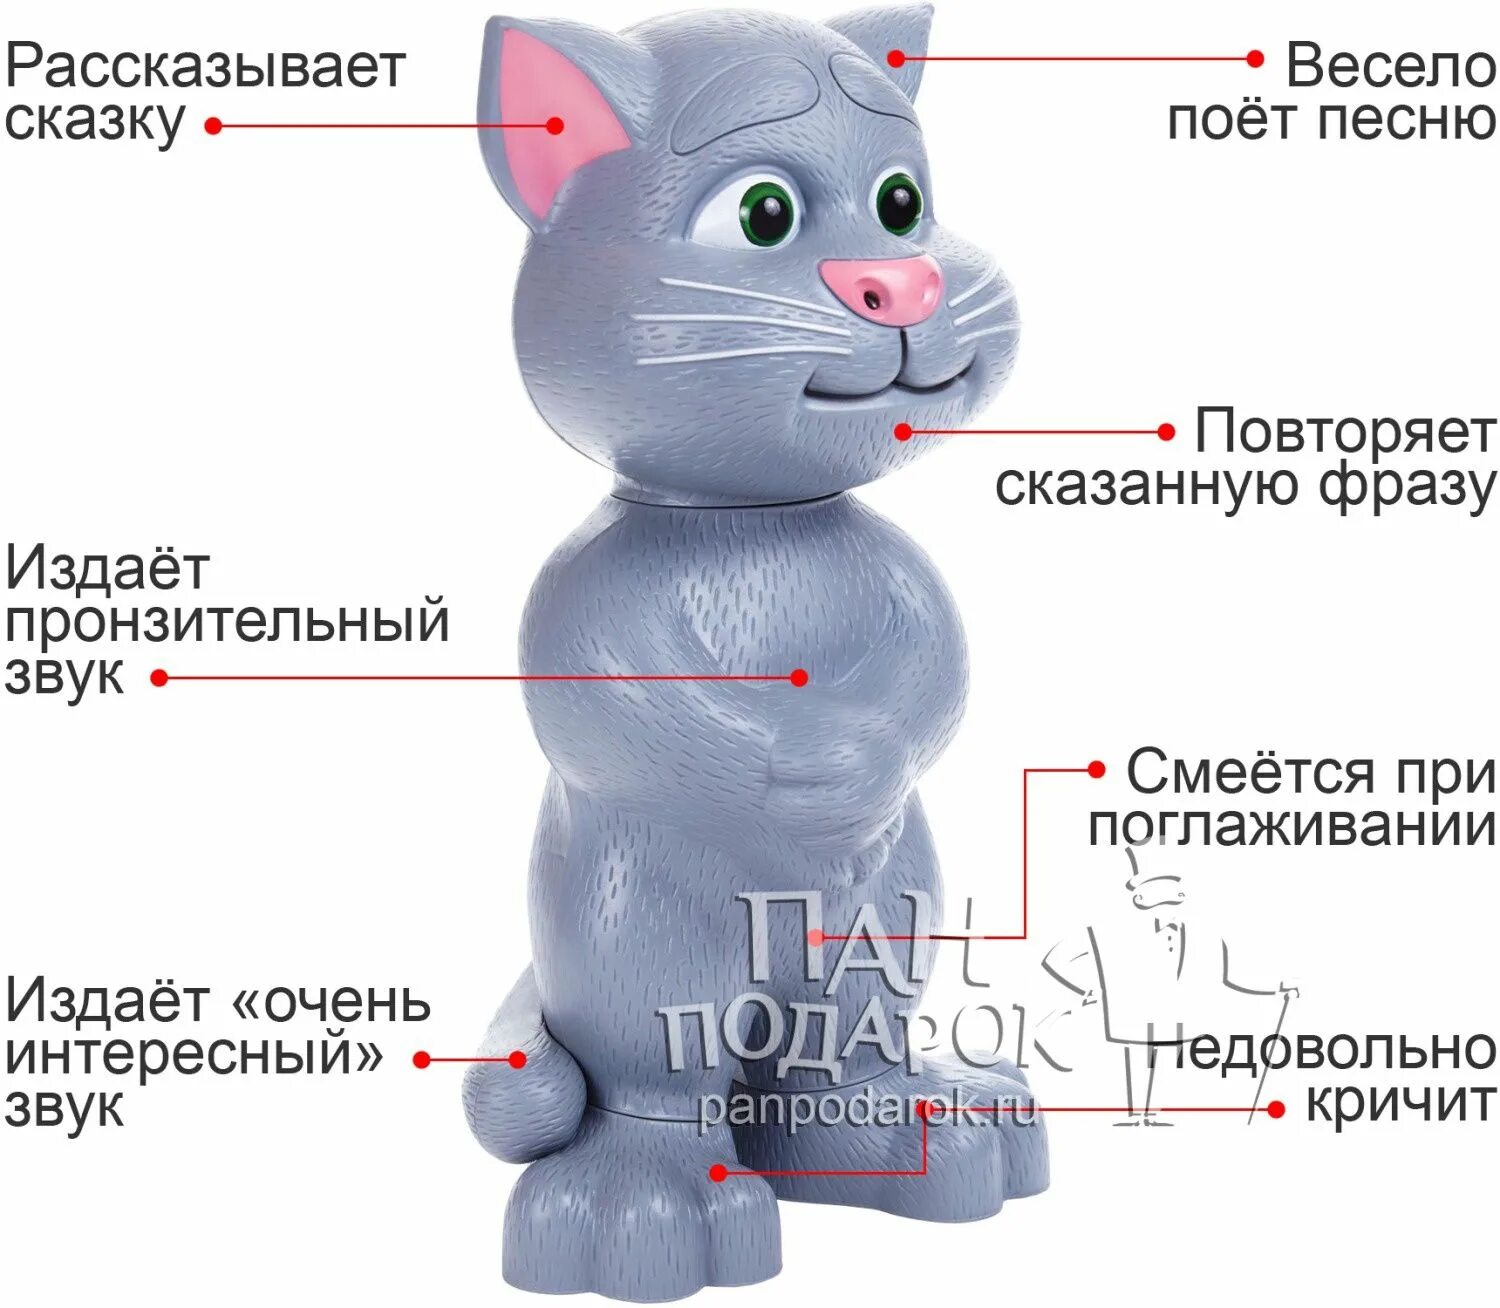 Купить том том в саратове. Игрушка кот том. Интерактивная игрушка говорящий том. Интерактивный кот говорящая игрушка. Интерактивный кот том.